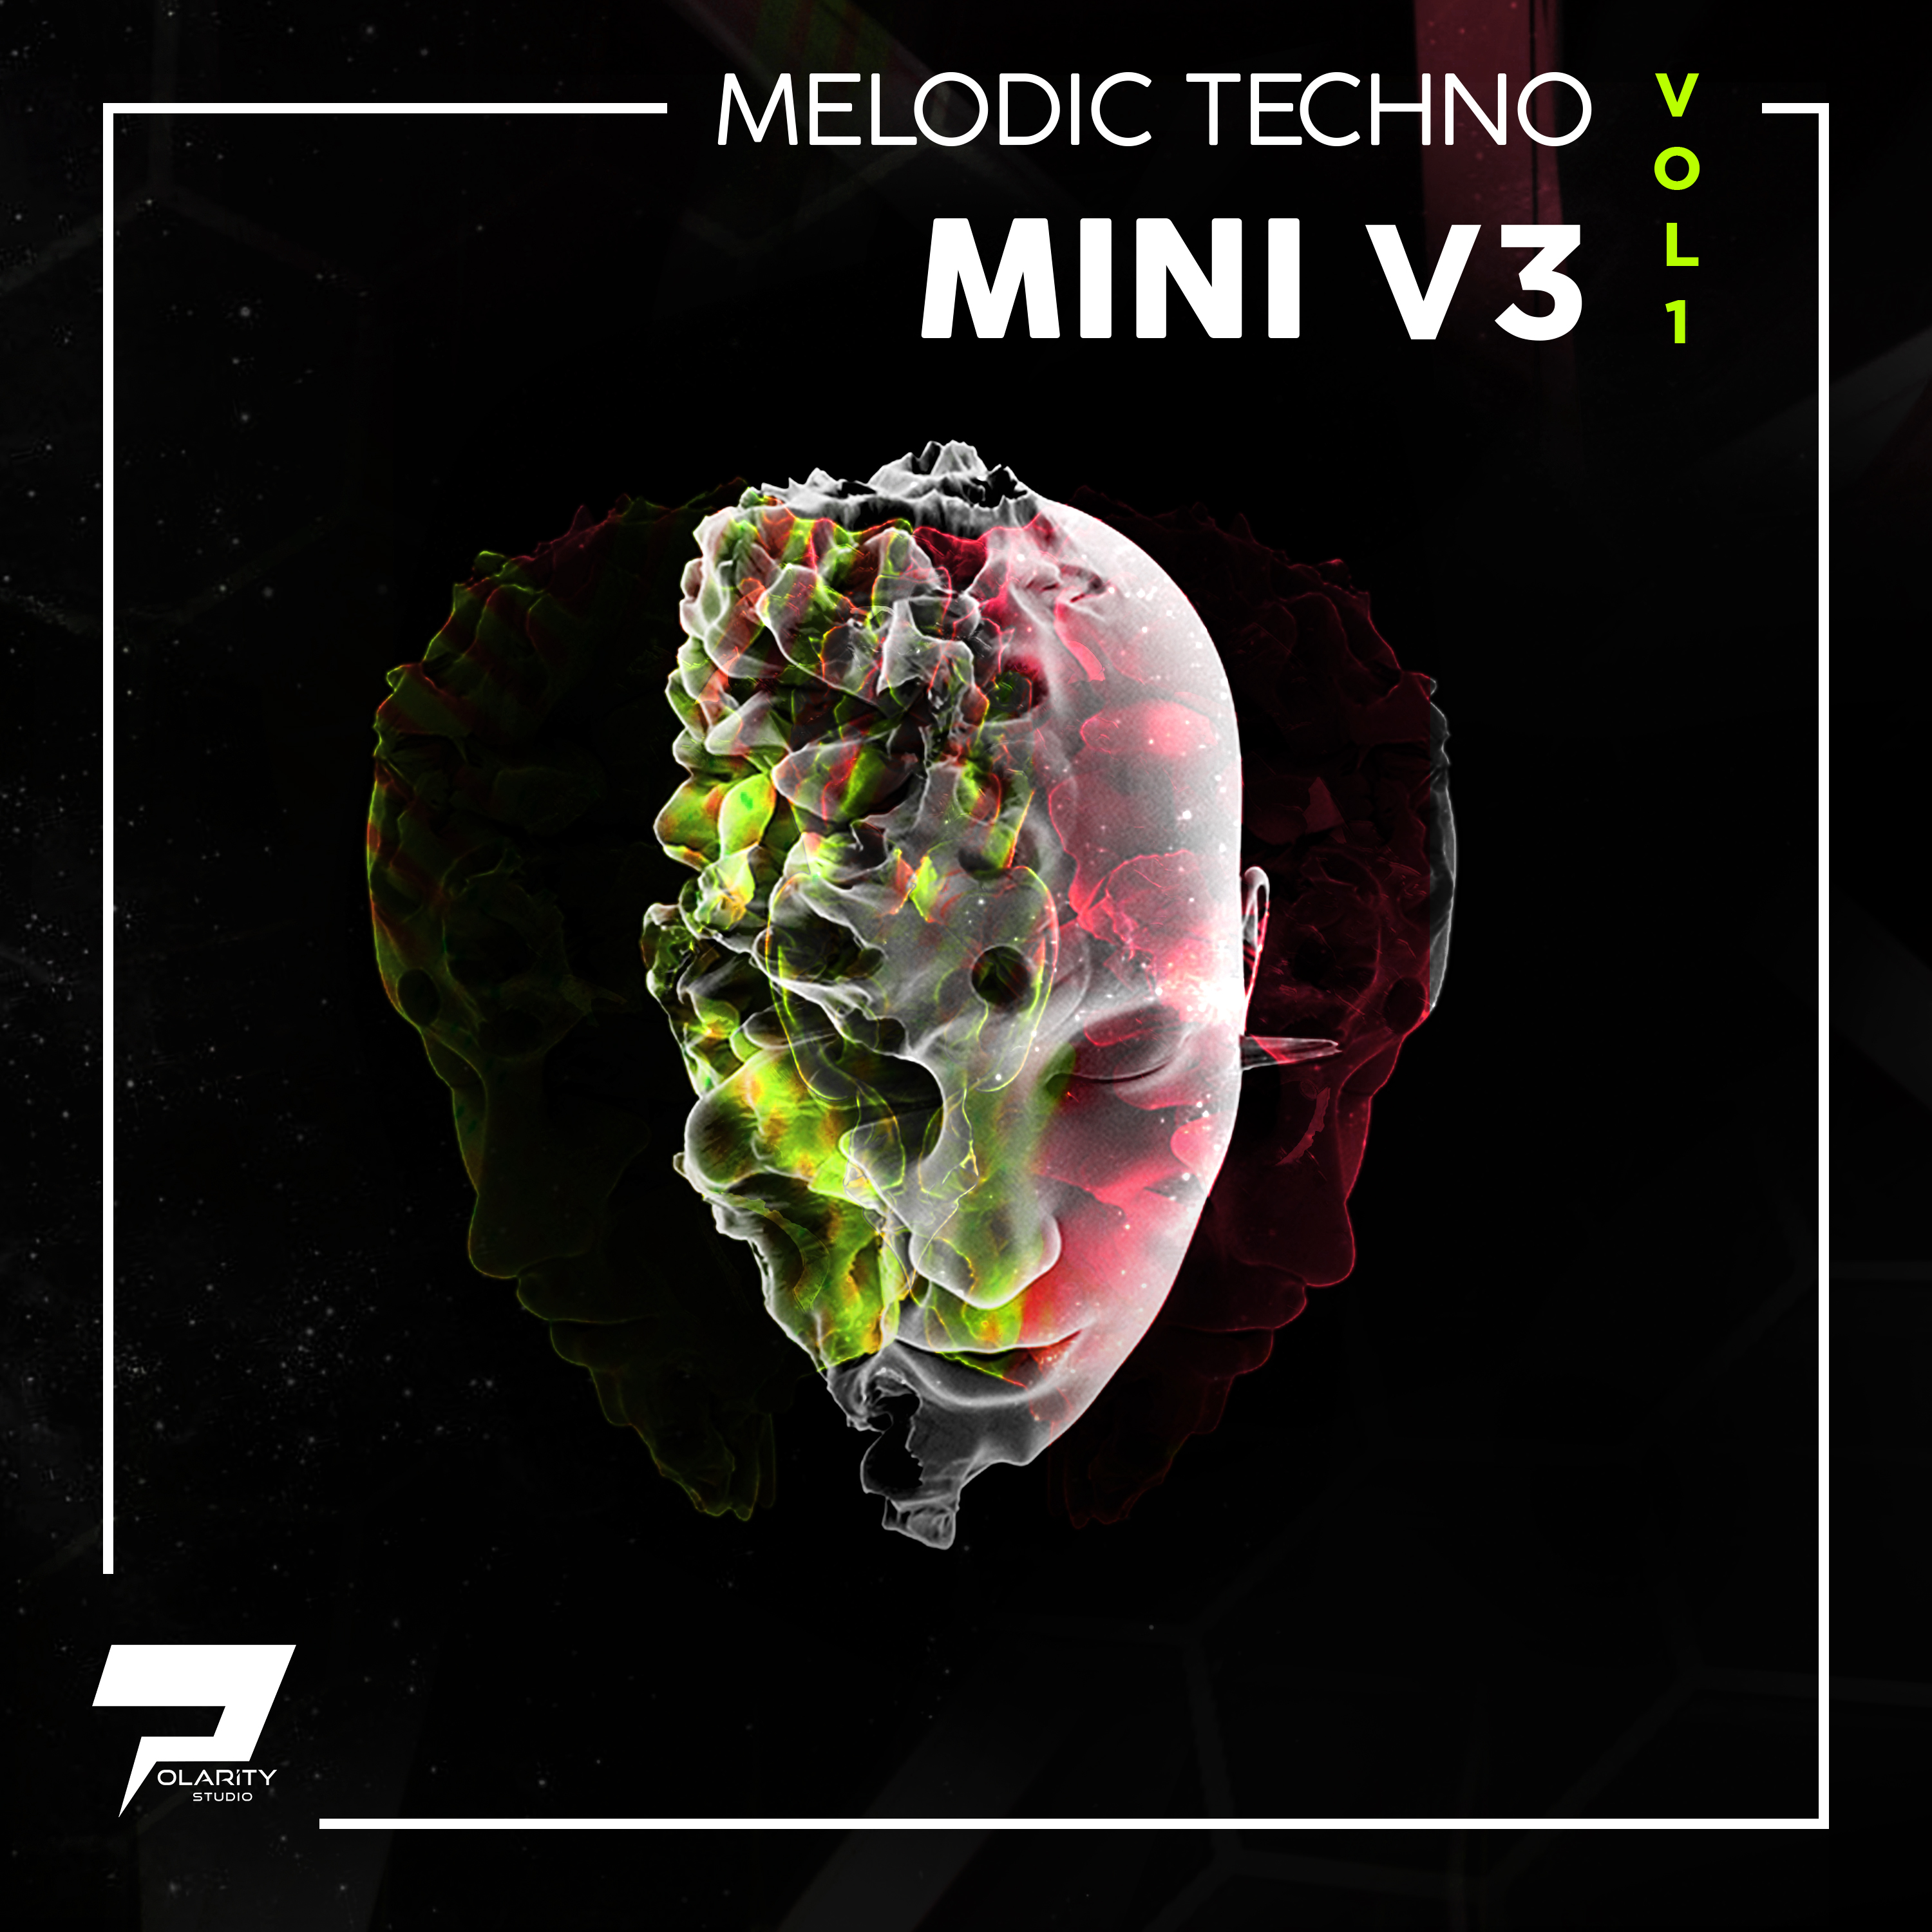 Polarity Studio - Melodic Techno - Mini V3 Vol. 1